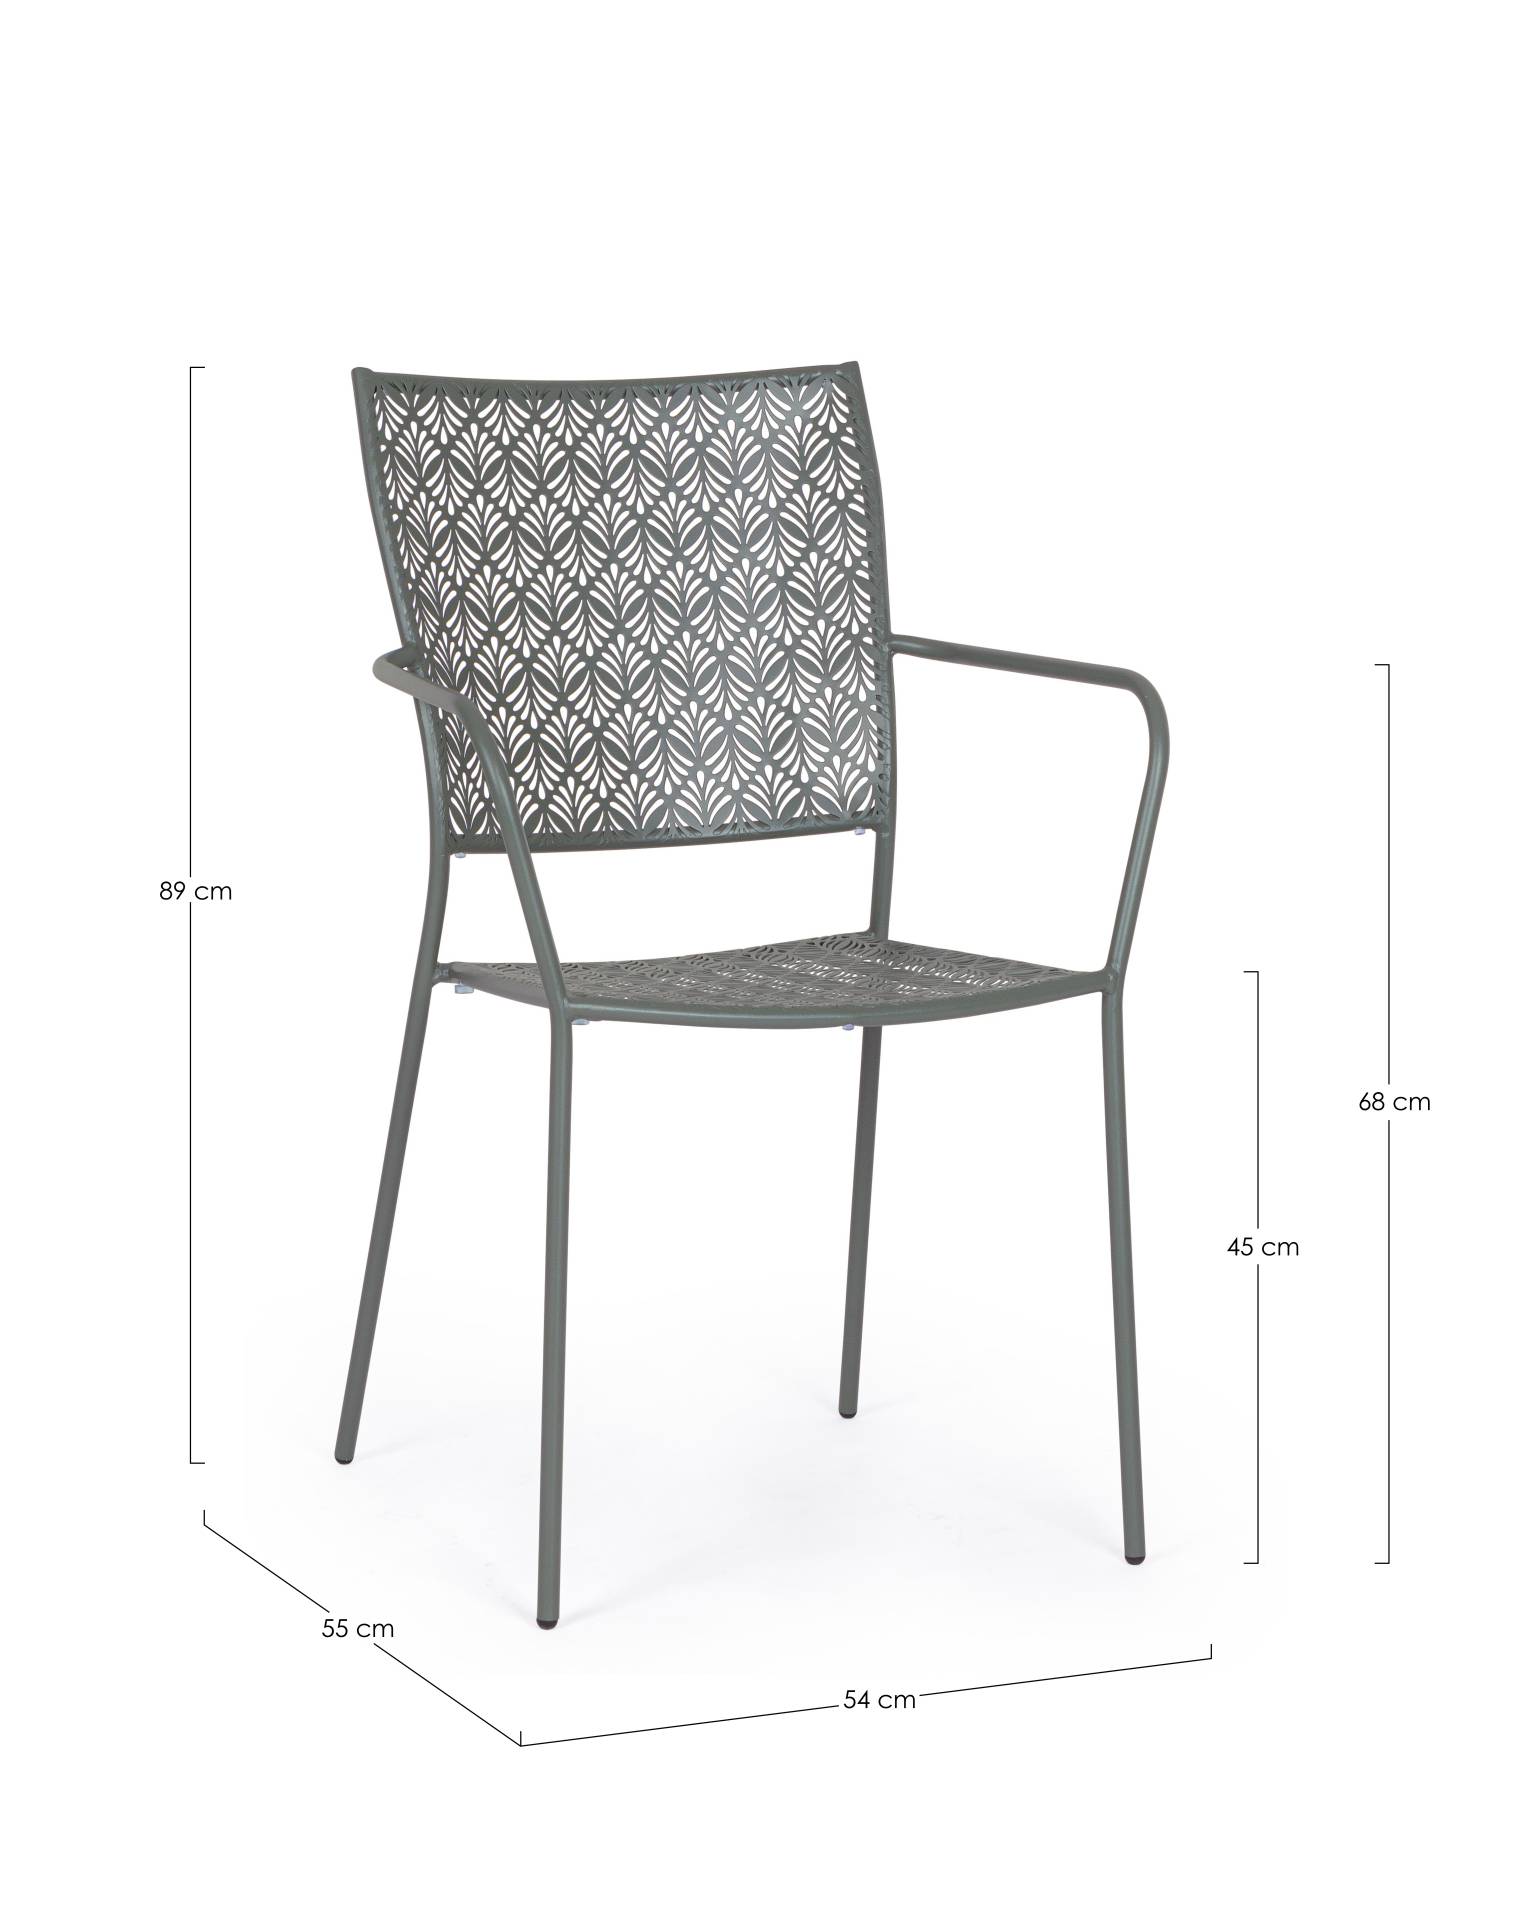 Der Gartenstuhl Lizette überzeugt mit seinem klassischen Design. Gefertigt wurde er aus Aluminium, welches einen grünen Farbton besitzen. Das Gestell ist aus Aluminium und hat eine grüne Farbe. Der Stuhl verfügt über eine Sitzhöhe von 45 cm und ist für de